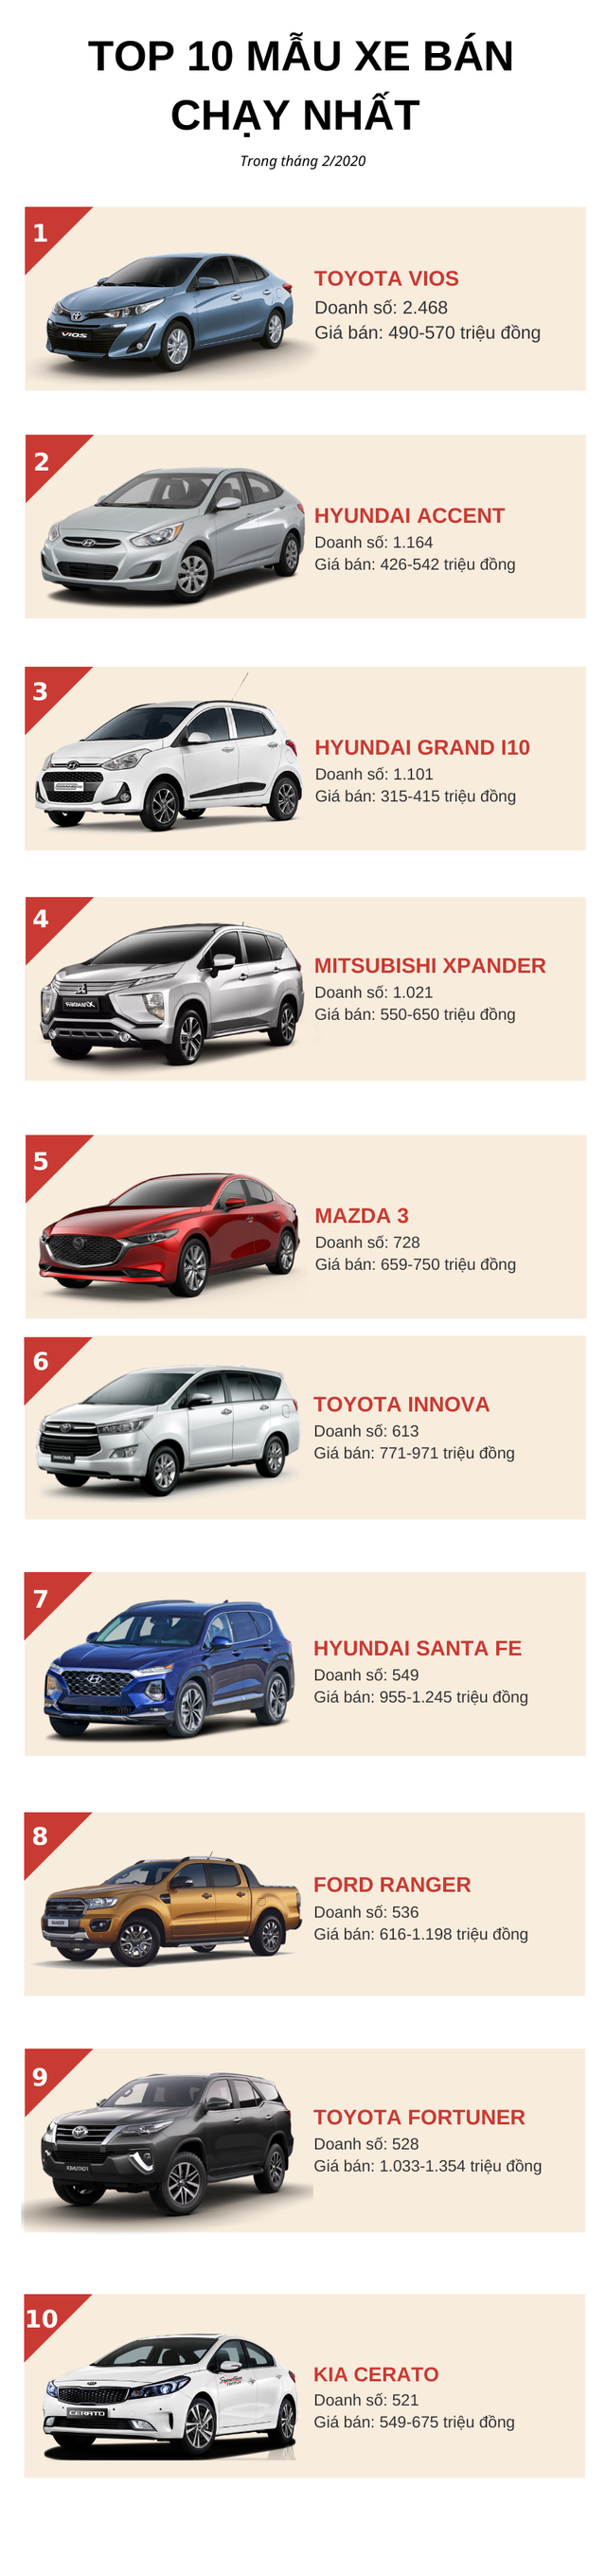 Top 10 ô tô bán chạy nhất tháng 2/2020: Toyota Vios bứt phá ngoạn mục, KIA Soluto rơi khỏi danh sách - Ảnh 1.